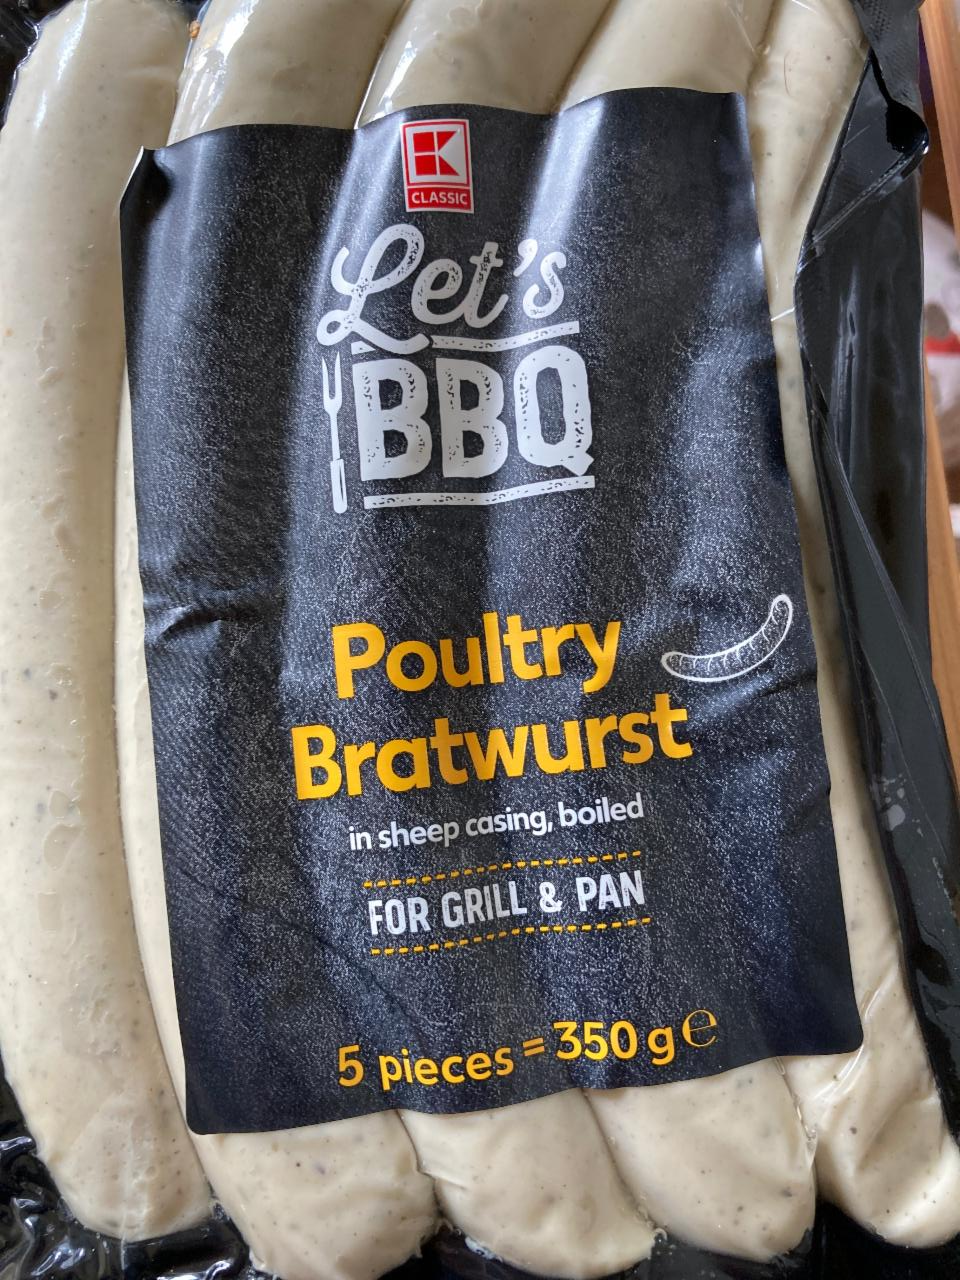 Fotografie - Let's BBQ Poultry Bratwurst K-Classic